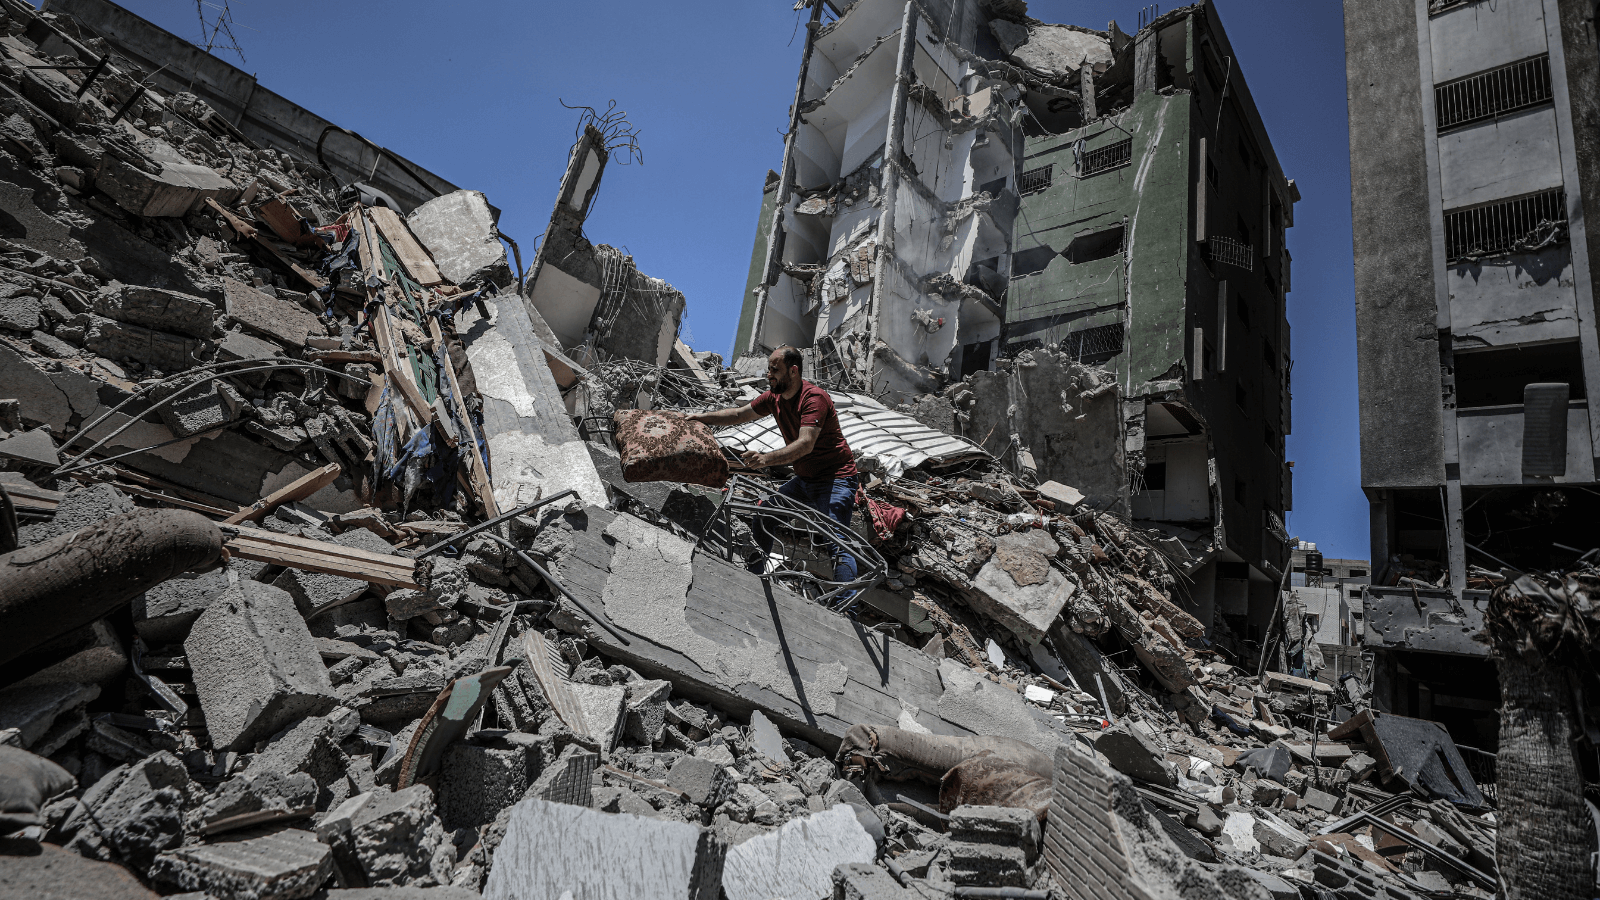 O jornalista palestino Alaa Shemali é visto nos destroços de sua casa demolida